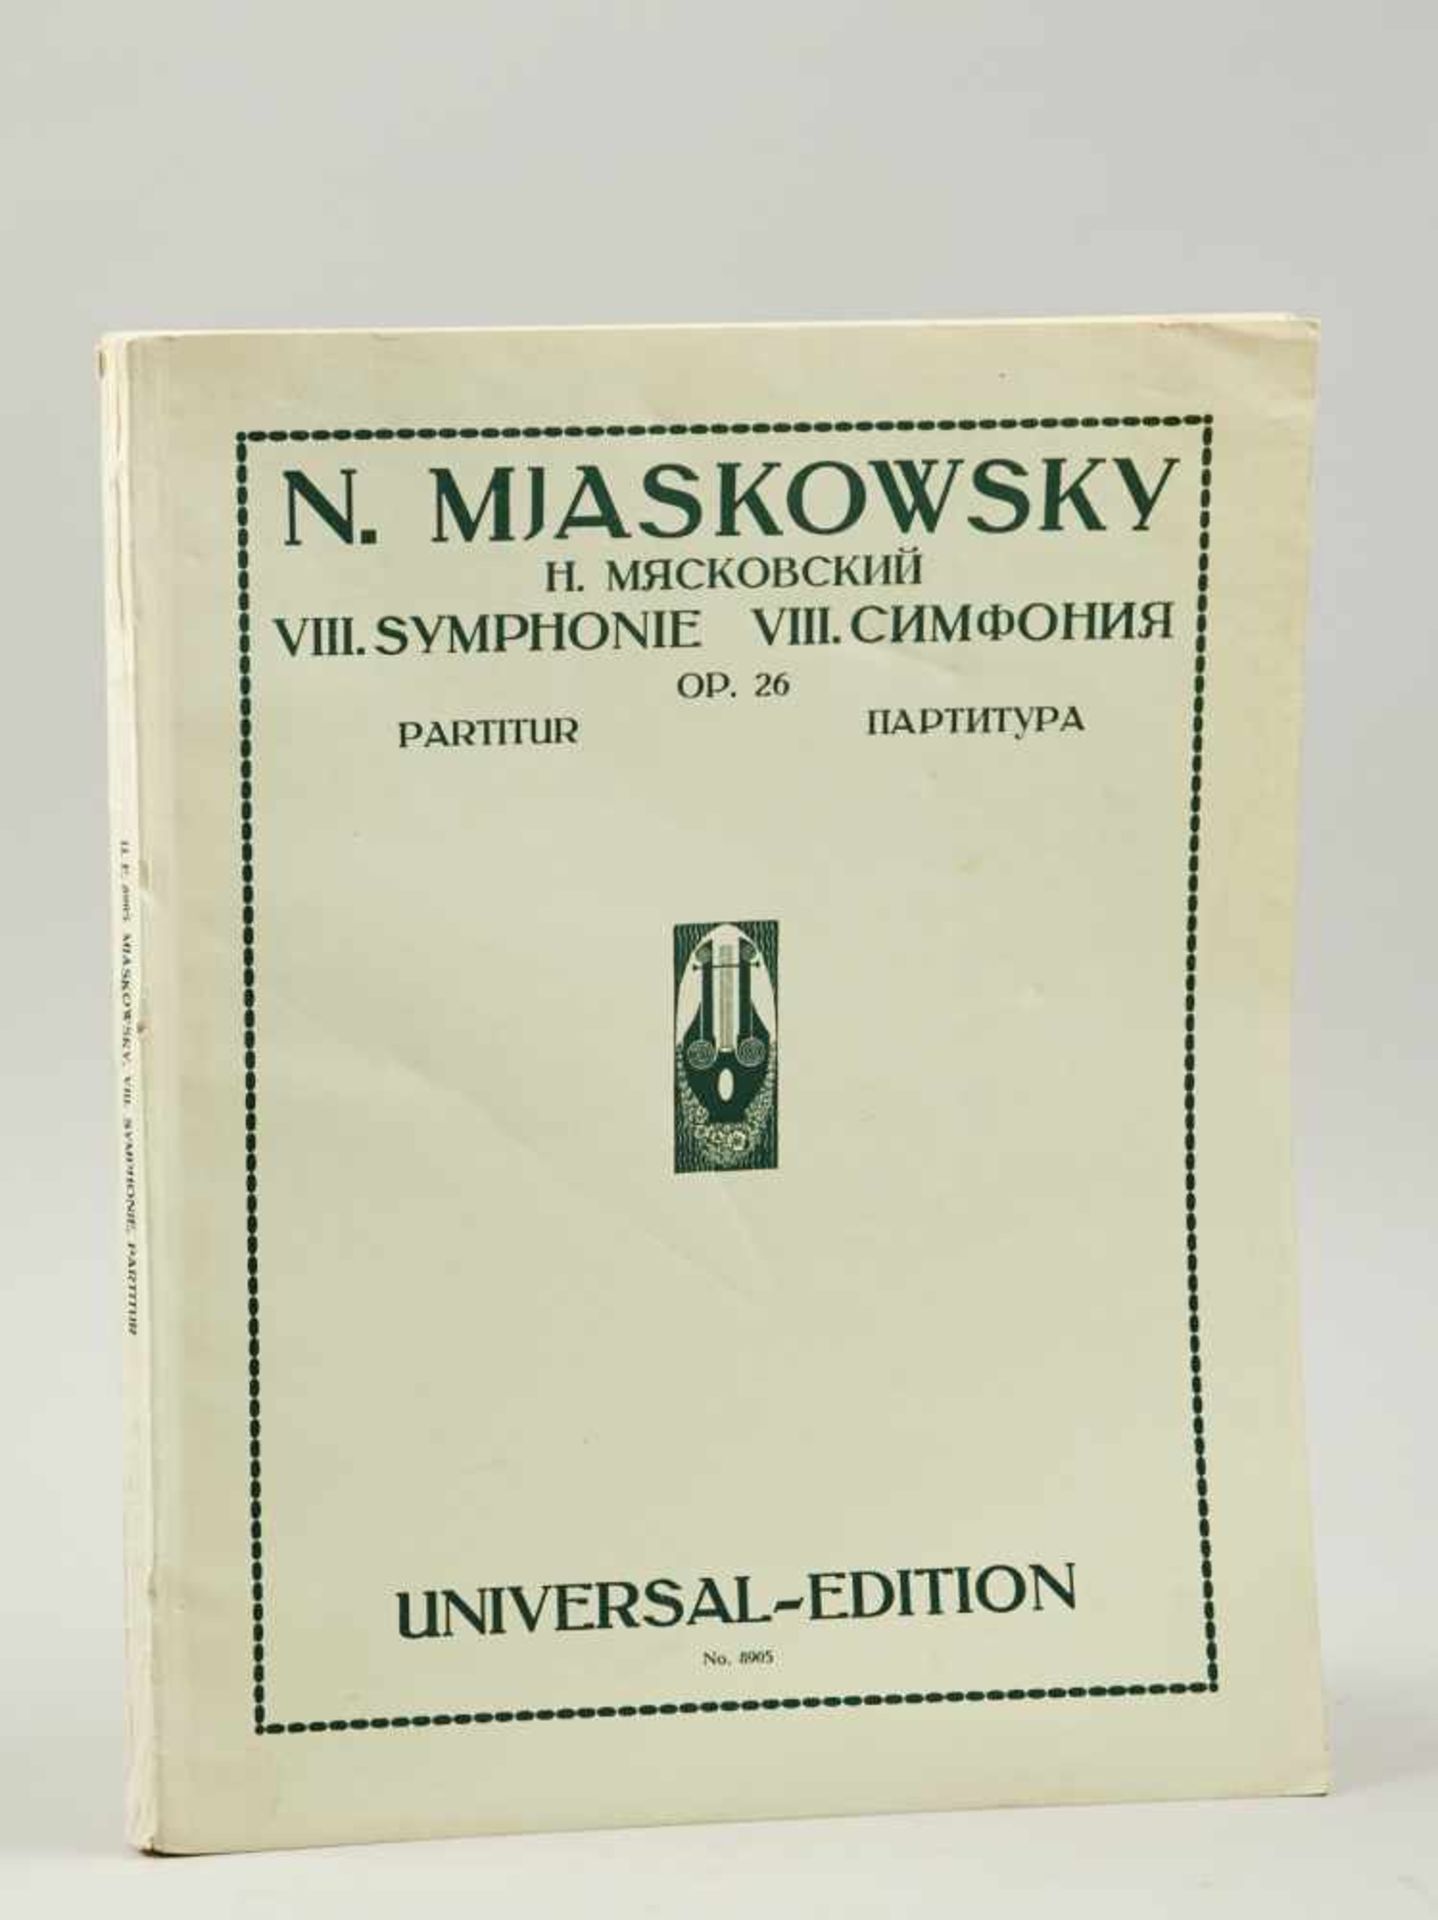 Mjaskowski, N.,VIII. Symphonie. Herrn Serge Popoff. Op. 26. Partitur. Wien und Leipzig, Universal-